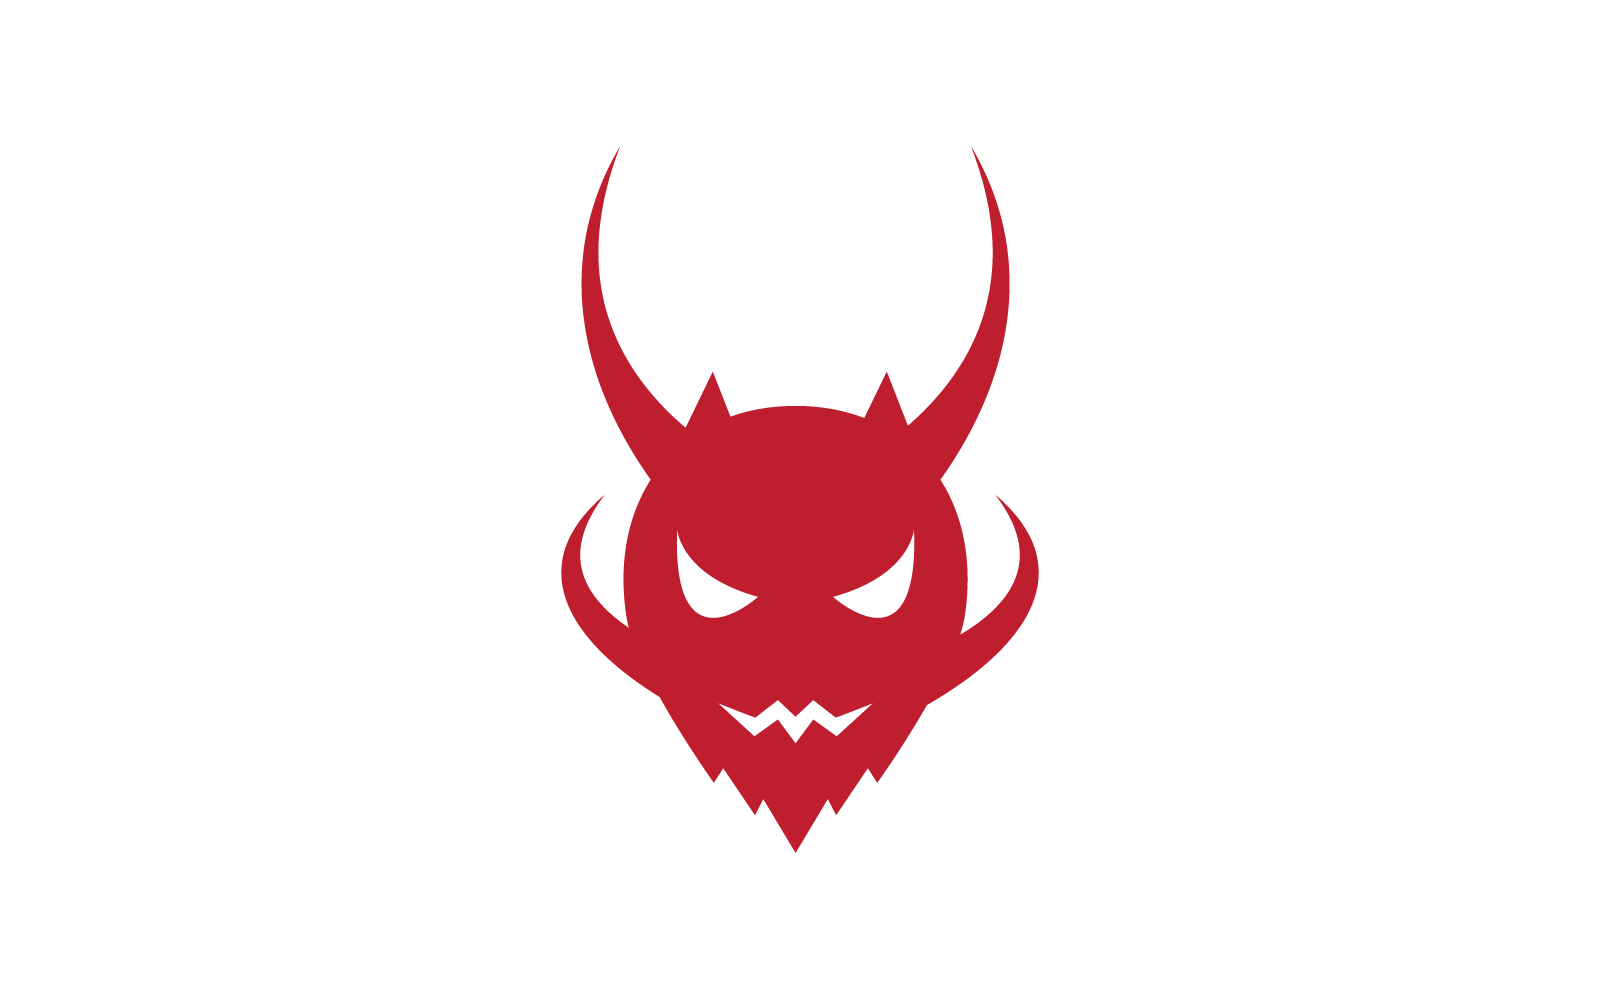 Devil logo ilustration template